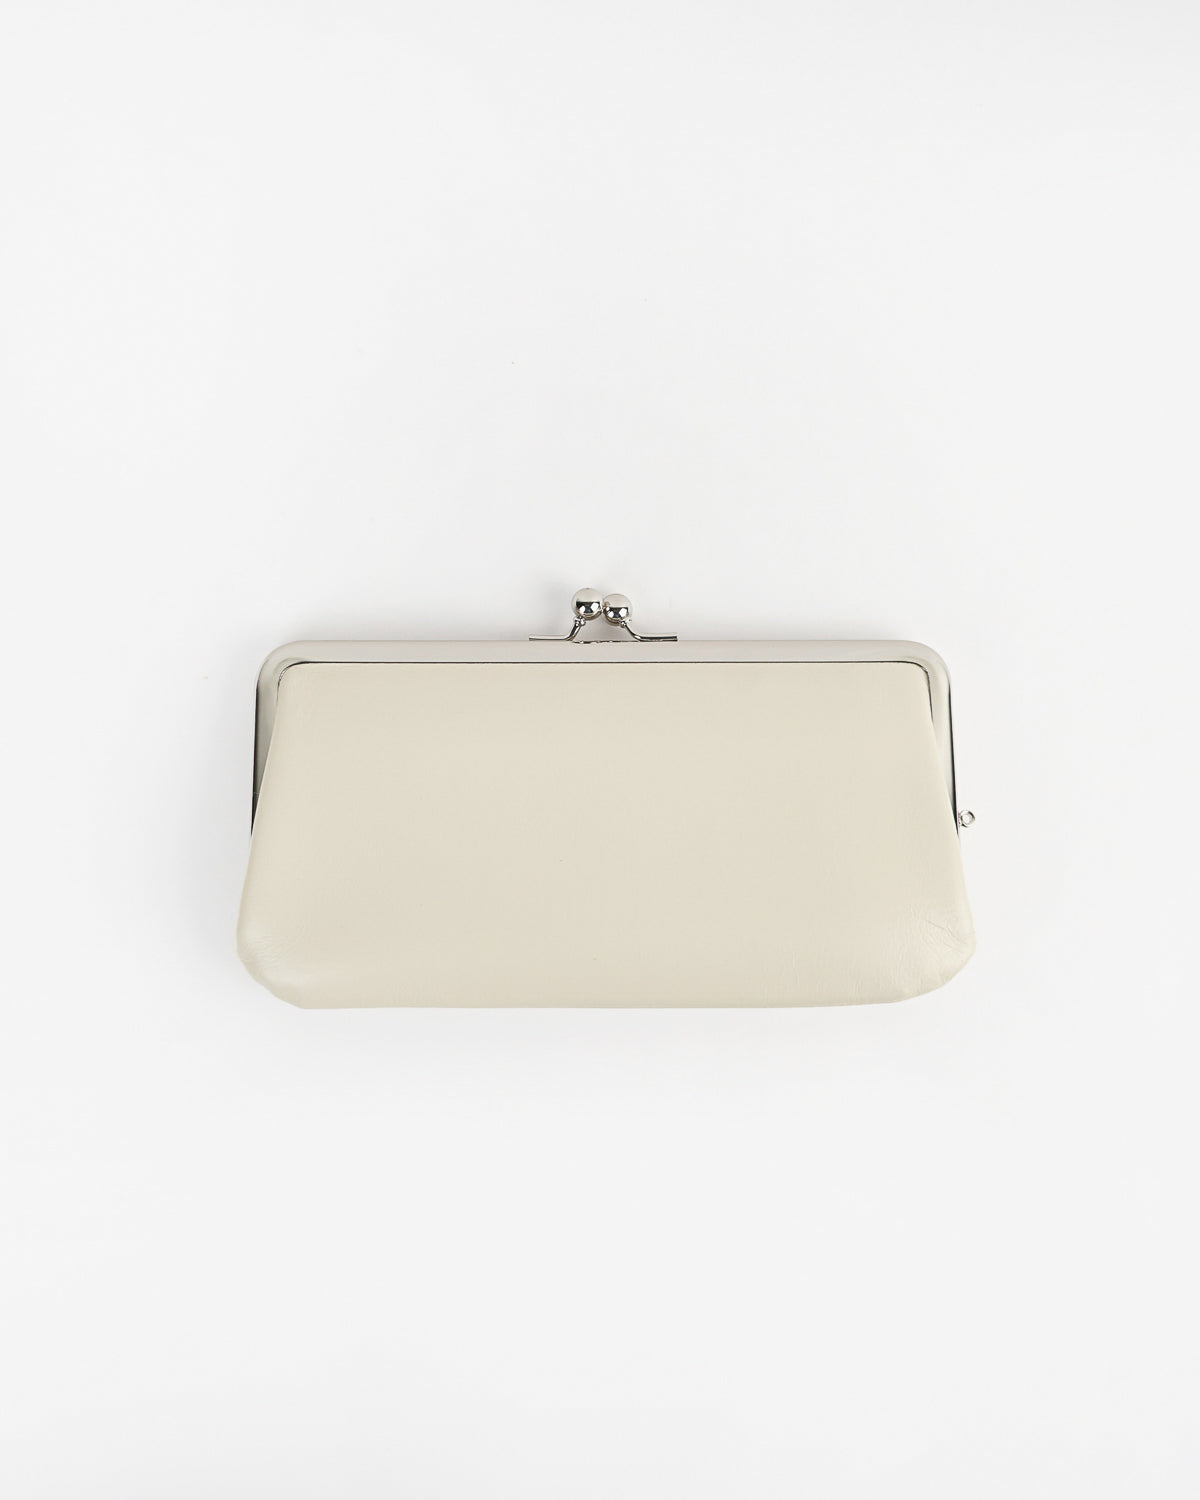 Miss Me White With Silver sequins Handbag Purse Shoulder Bag Leather | eBay